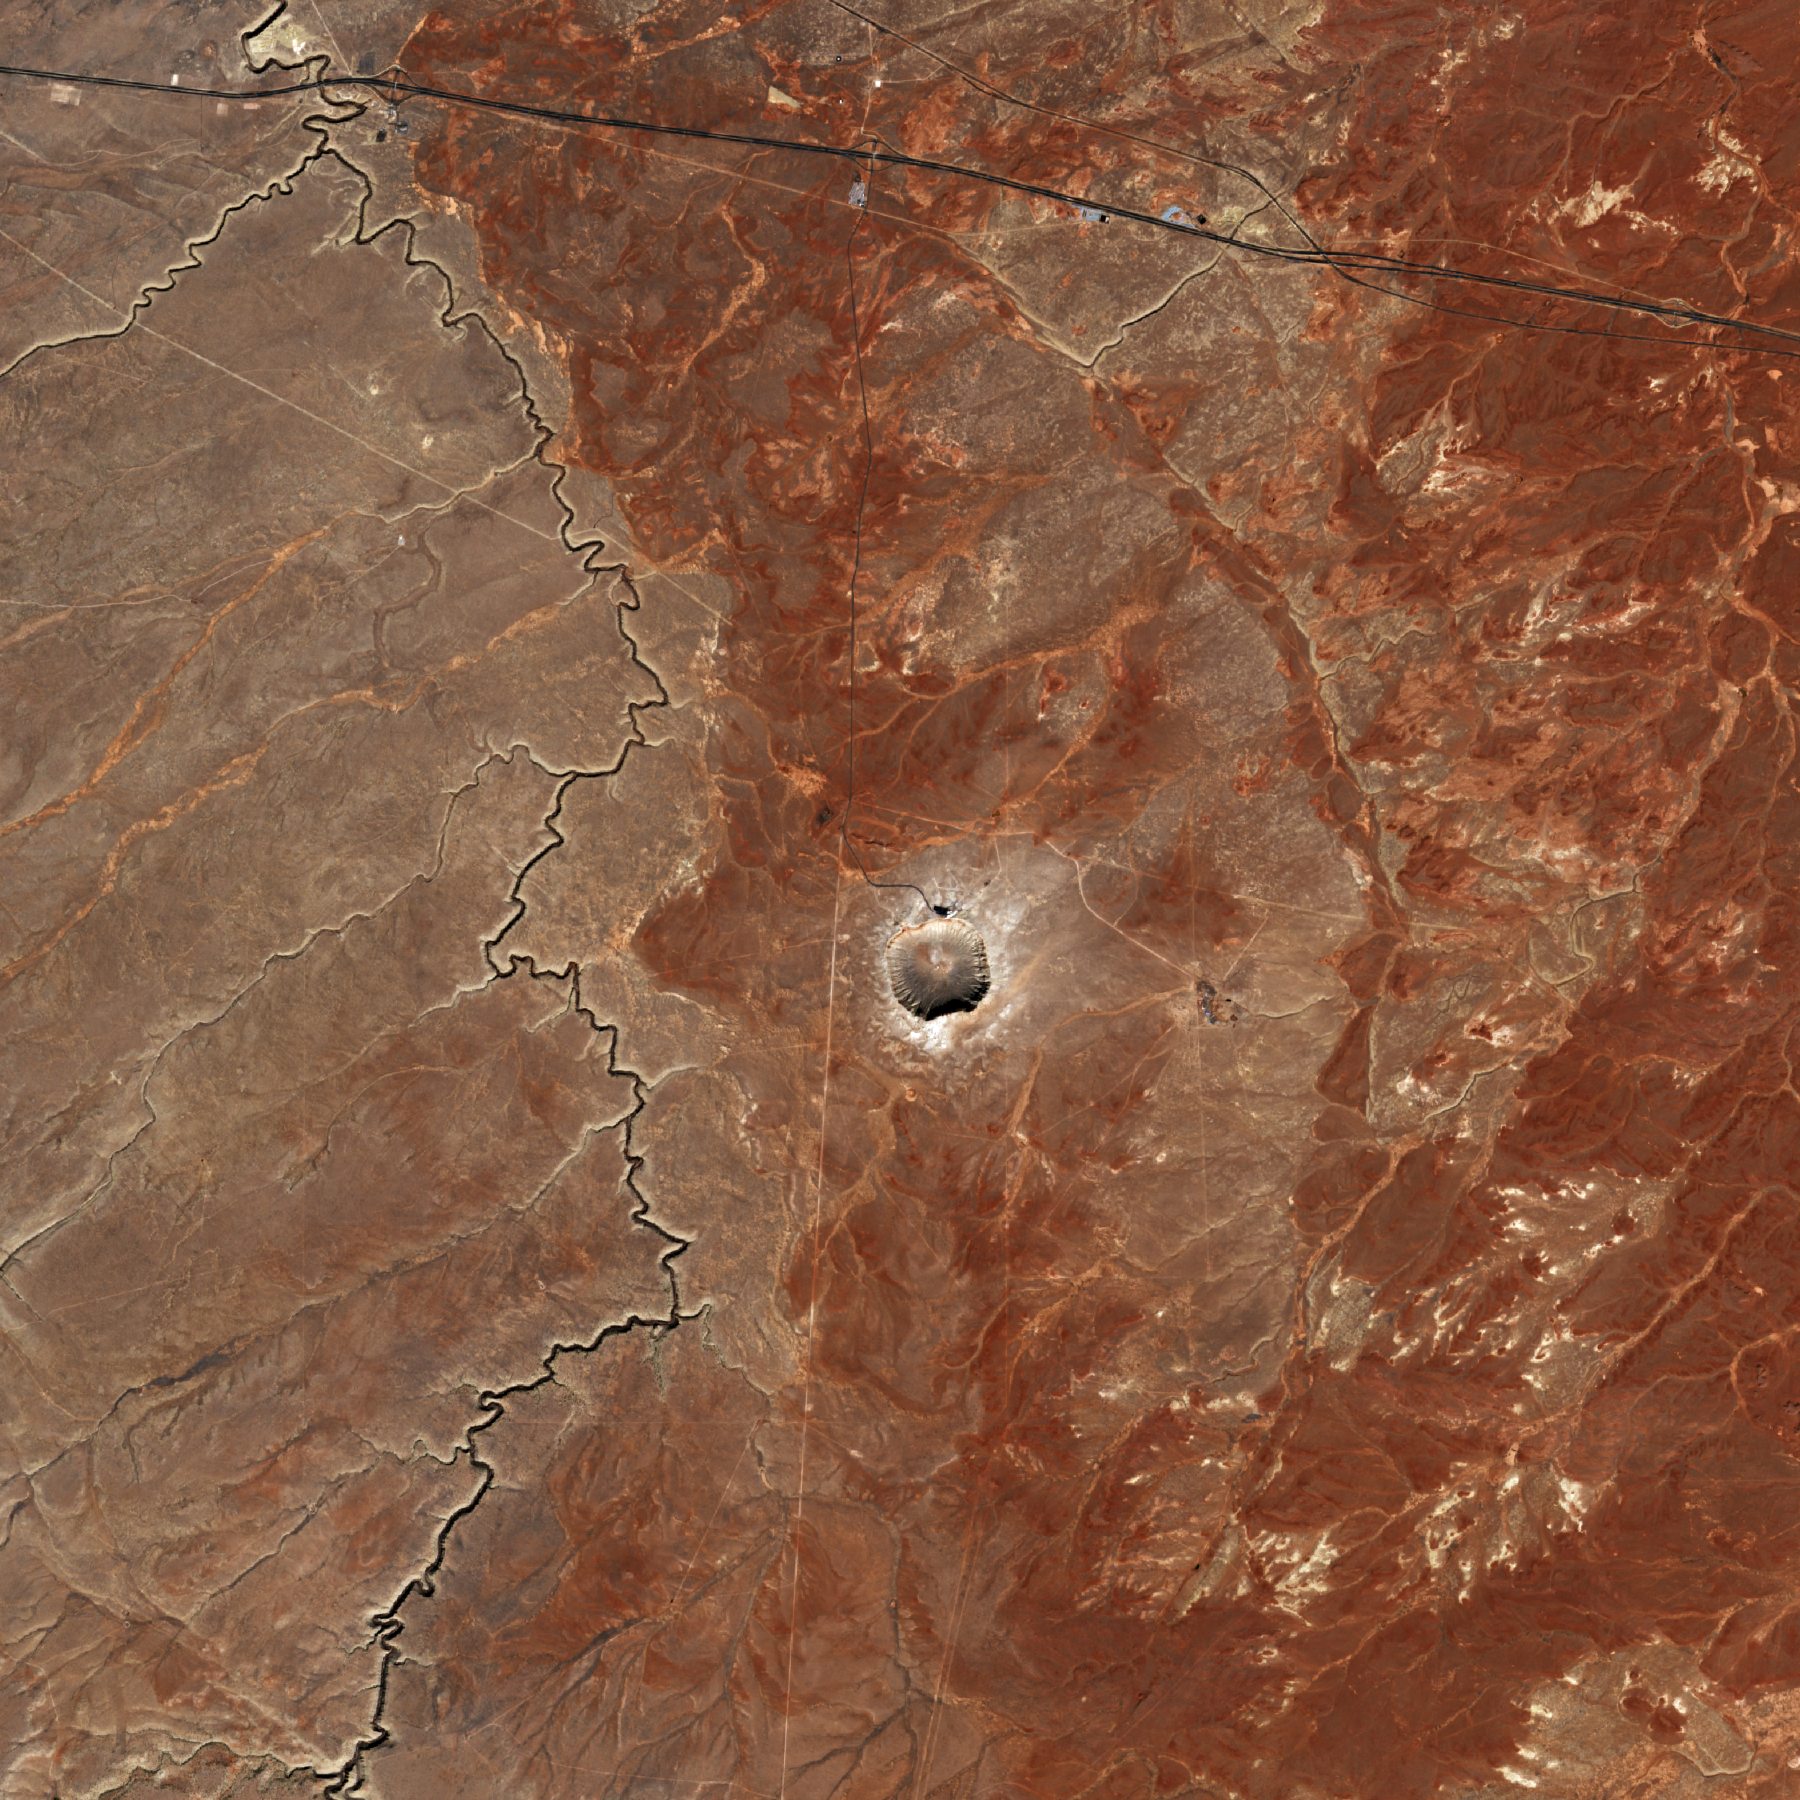 Cratera no deserto do Arizona vista do espaço pela missão Copernicus